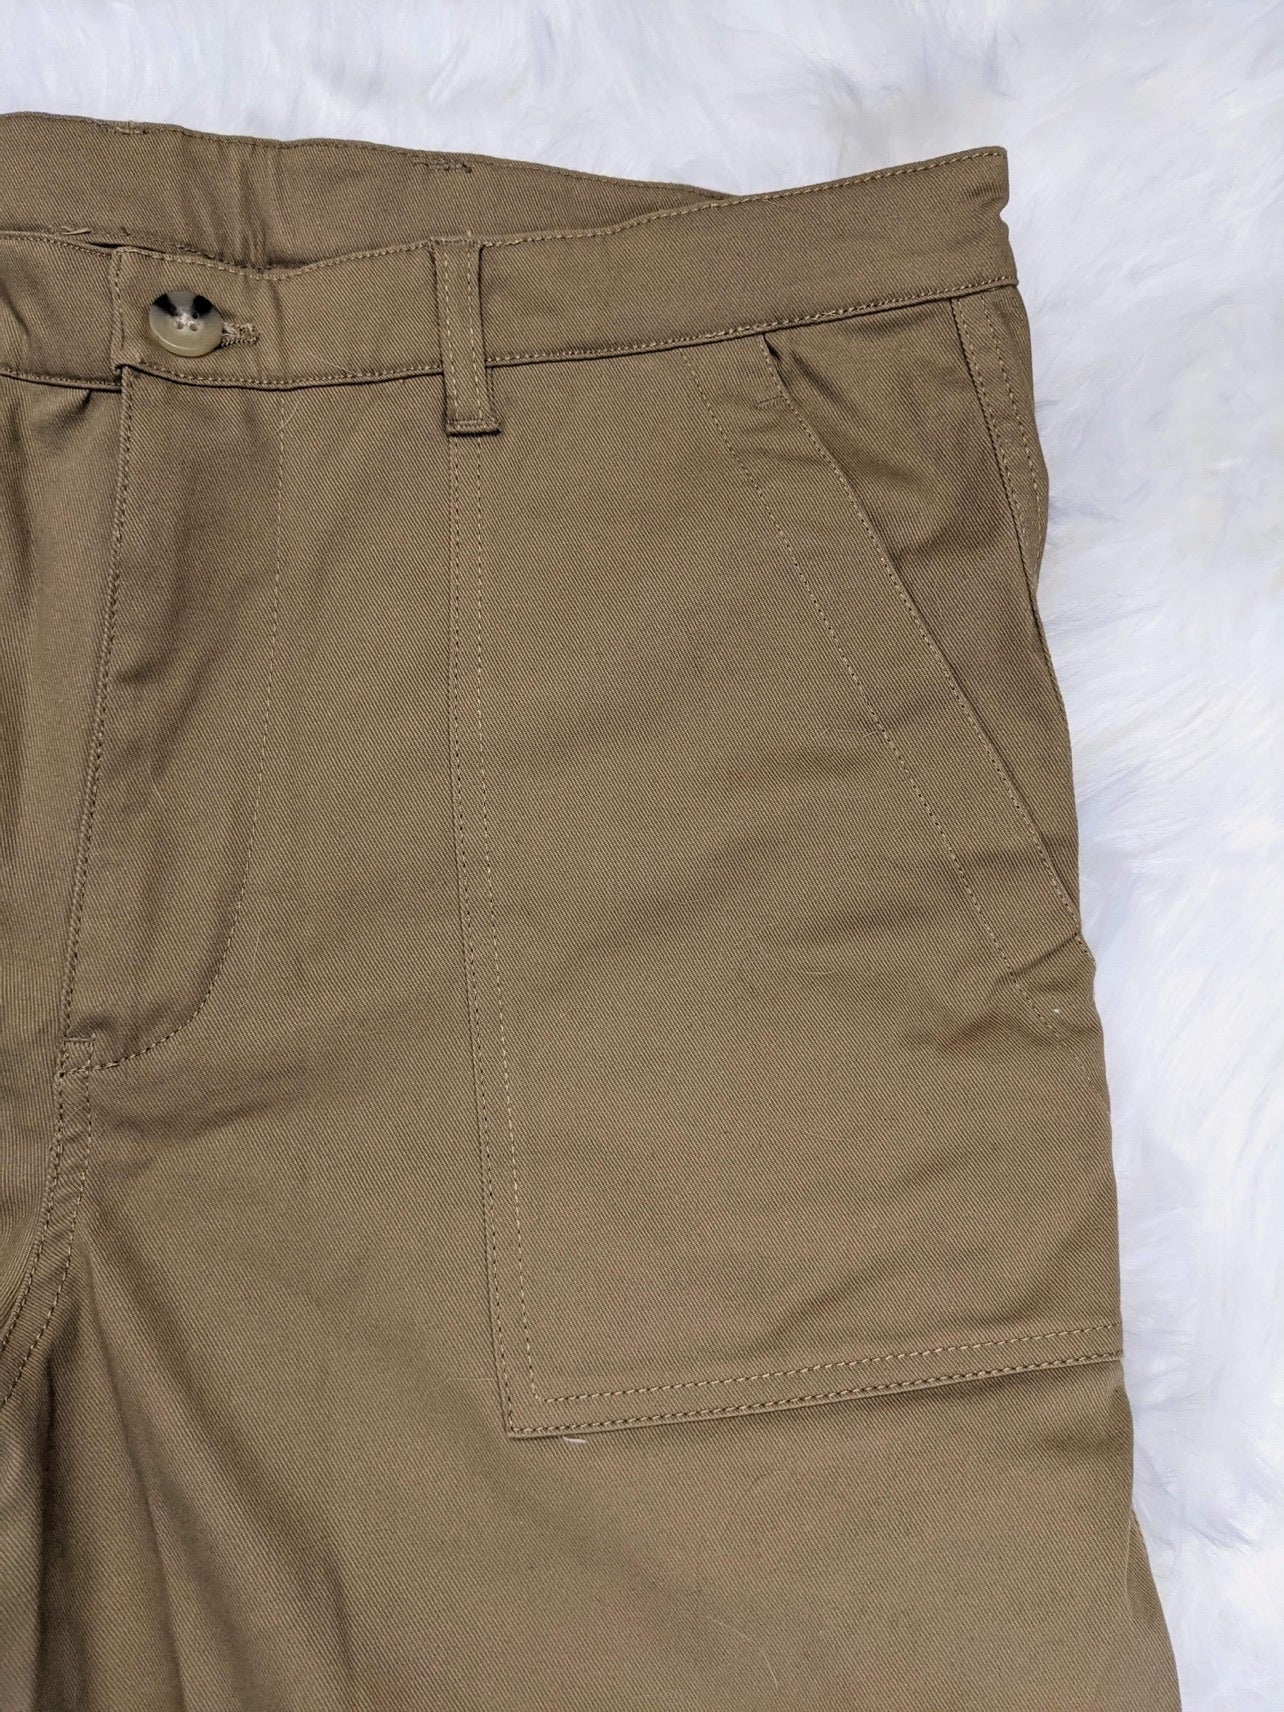 wide leg 1940s style mens pants fatigue style front patch pockets khaki colour